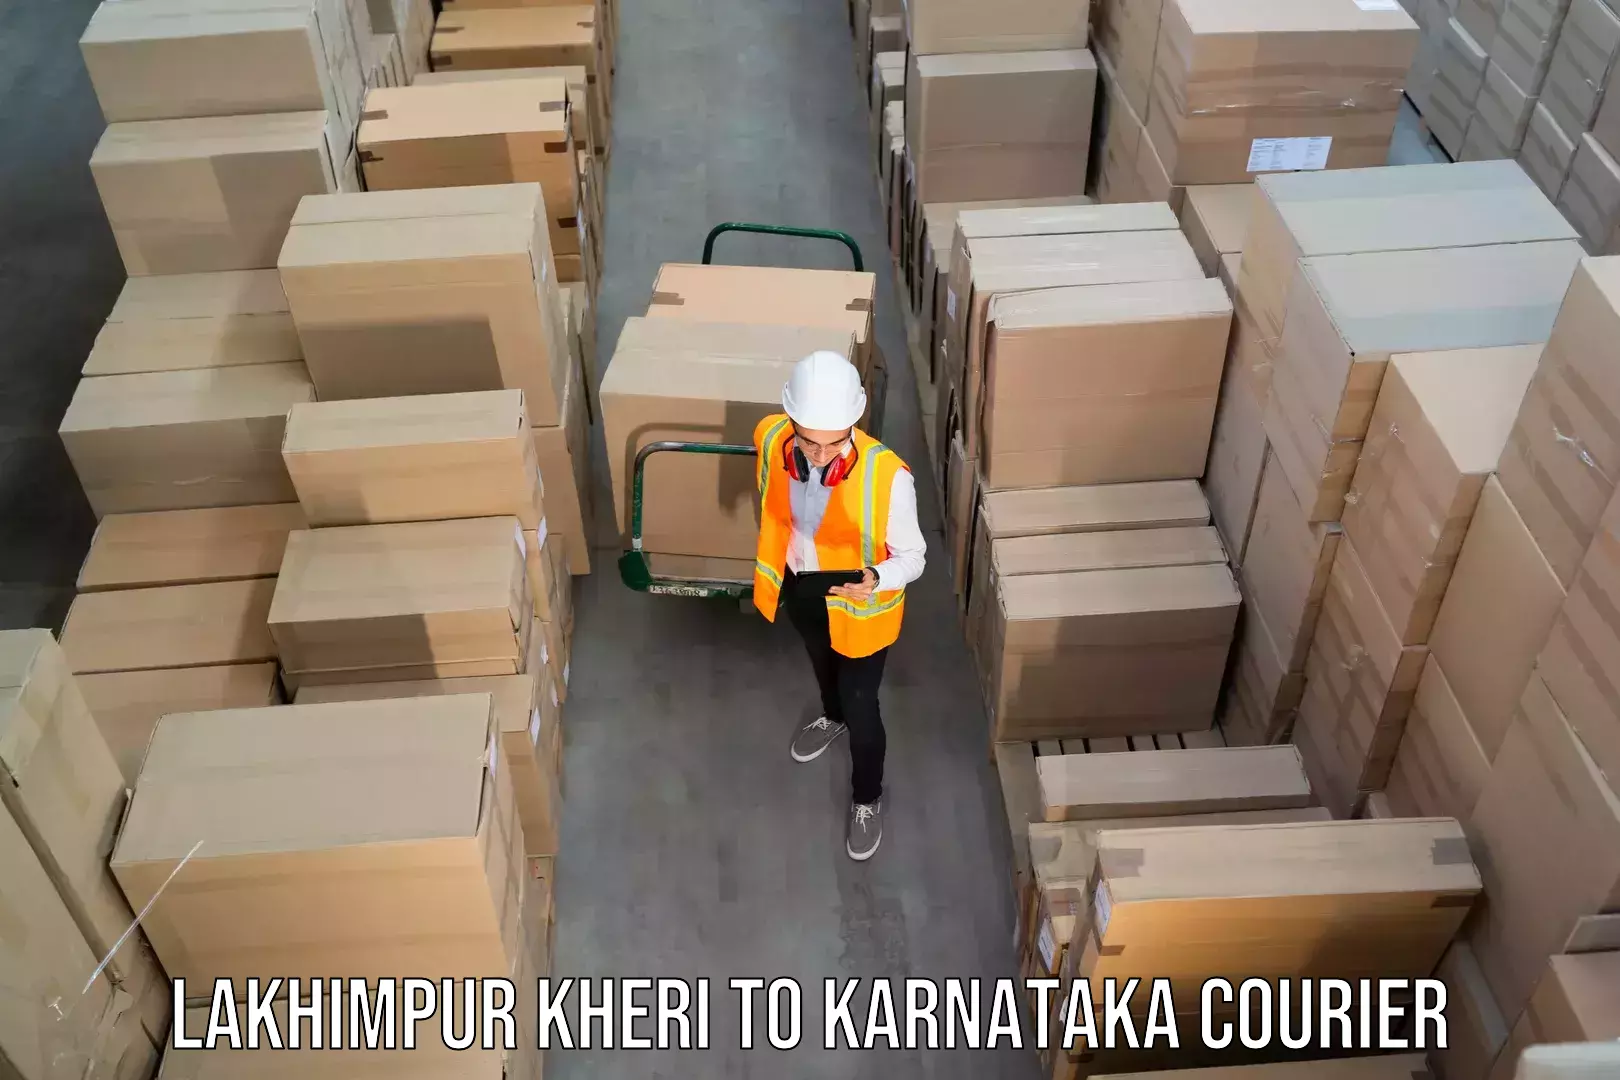 24/7 shipping services Lakhimpur Kheri to Madhugiri